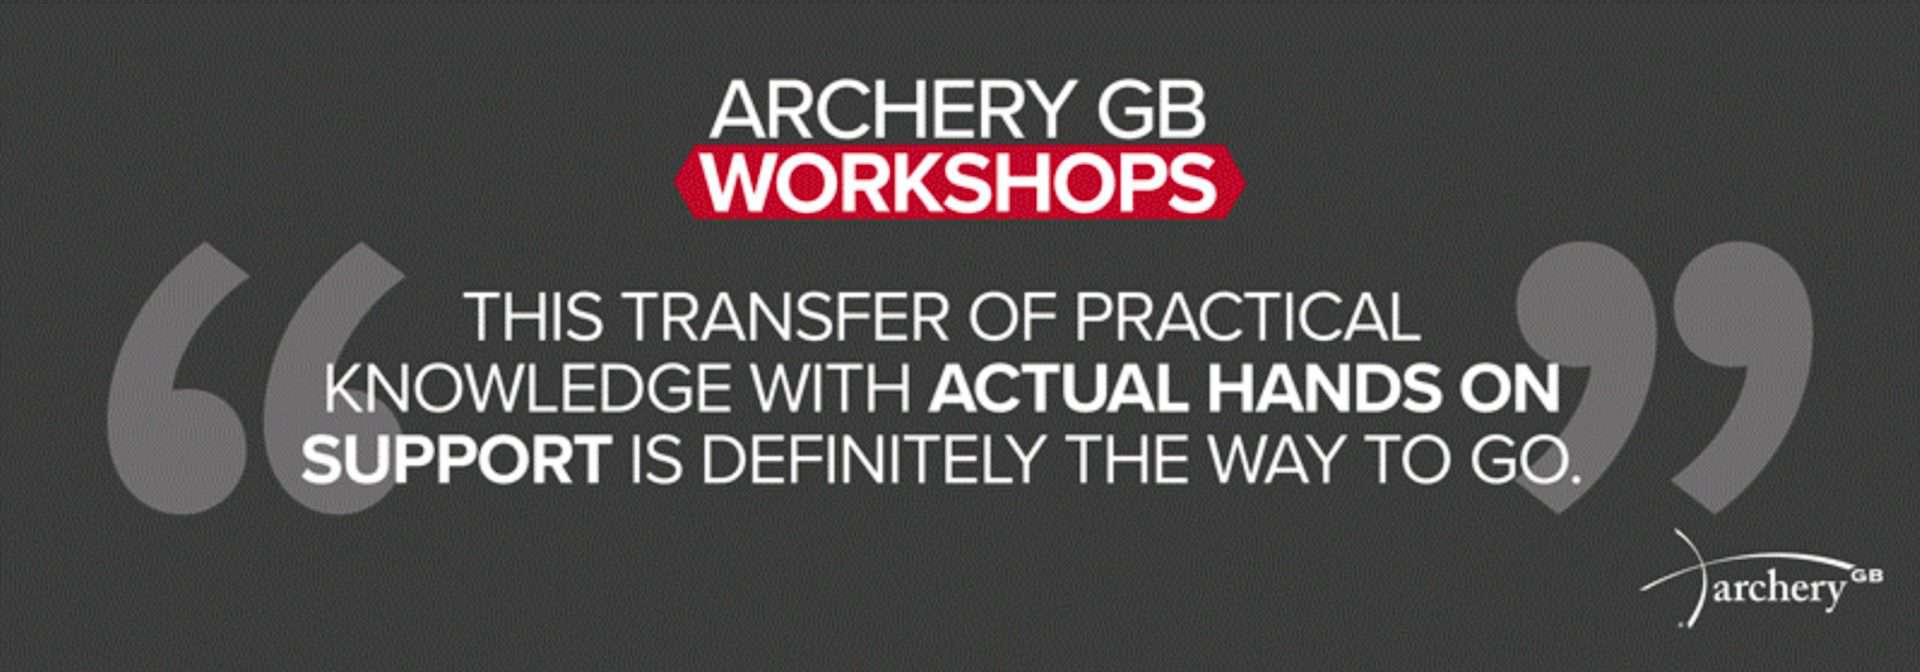 Archery GB announces new workshop dates